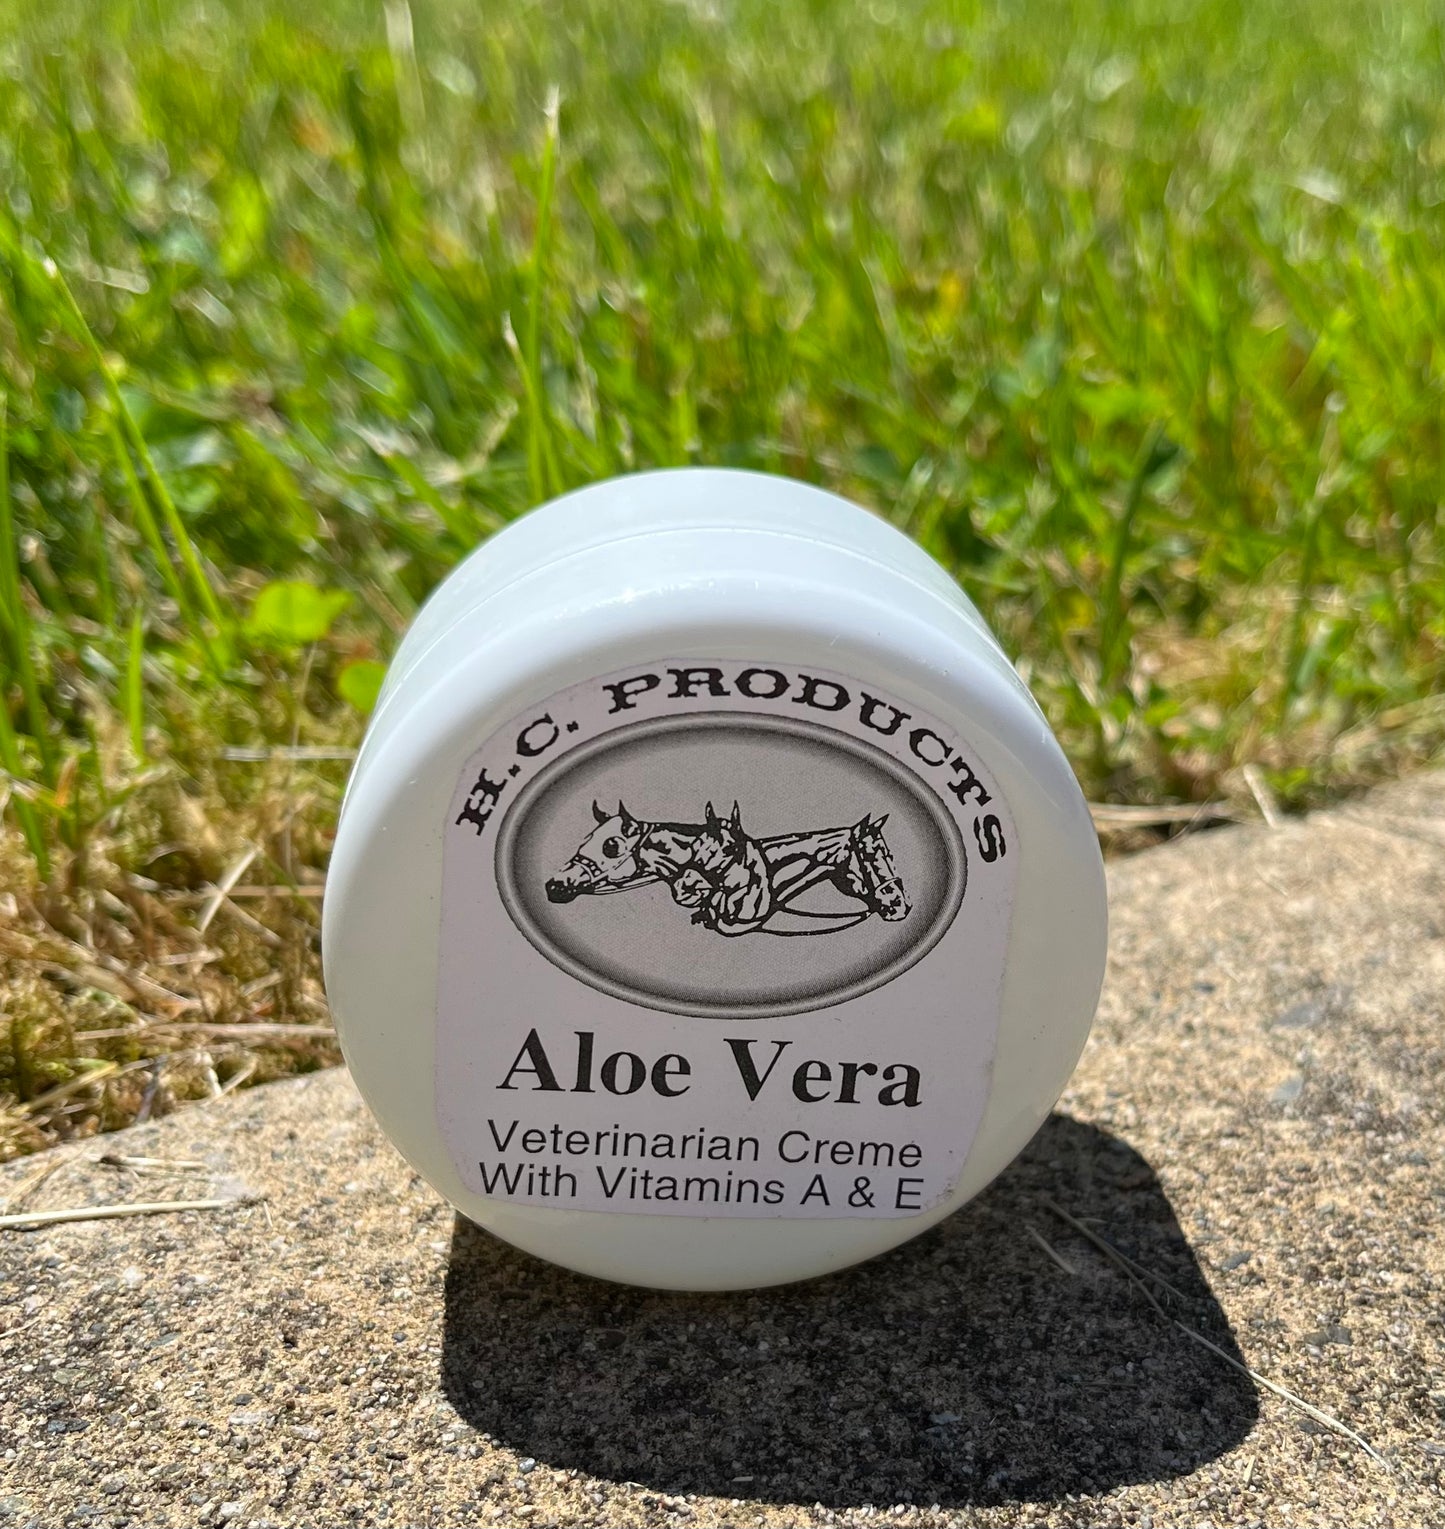 Aloe Vera Veterinarian creme with Vitamins A&E